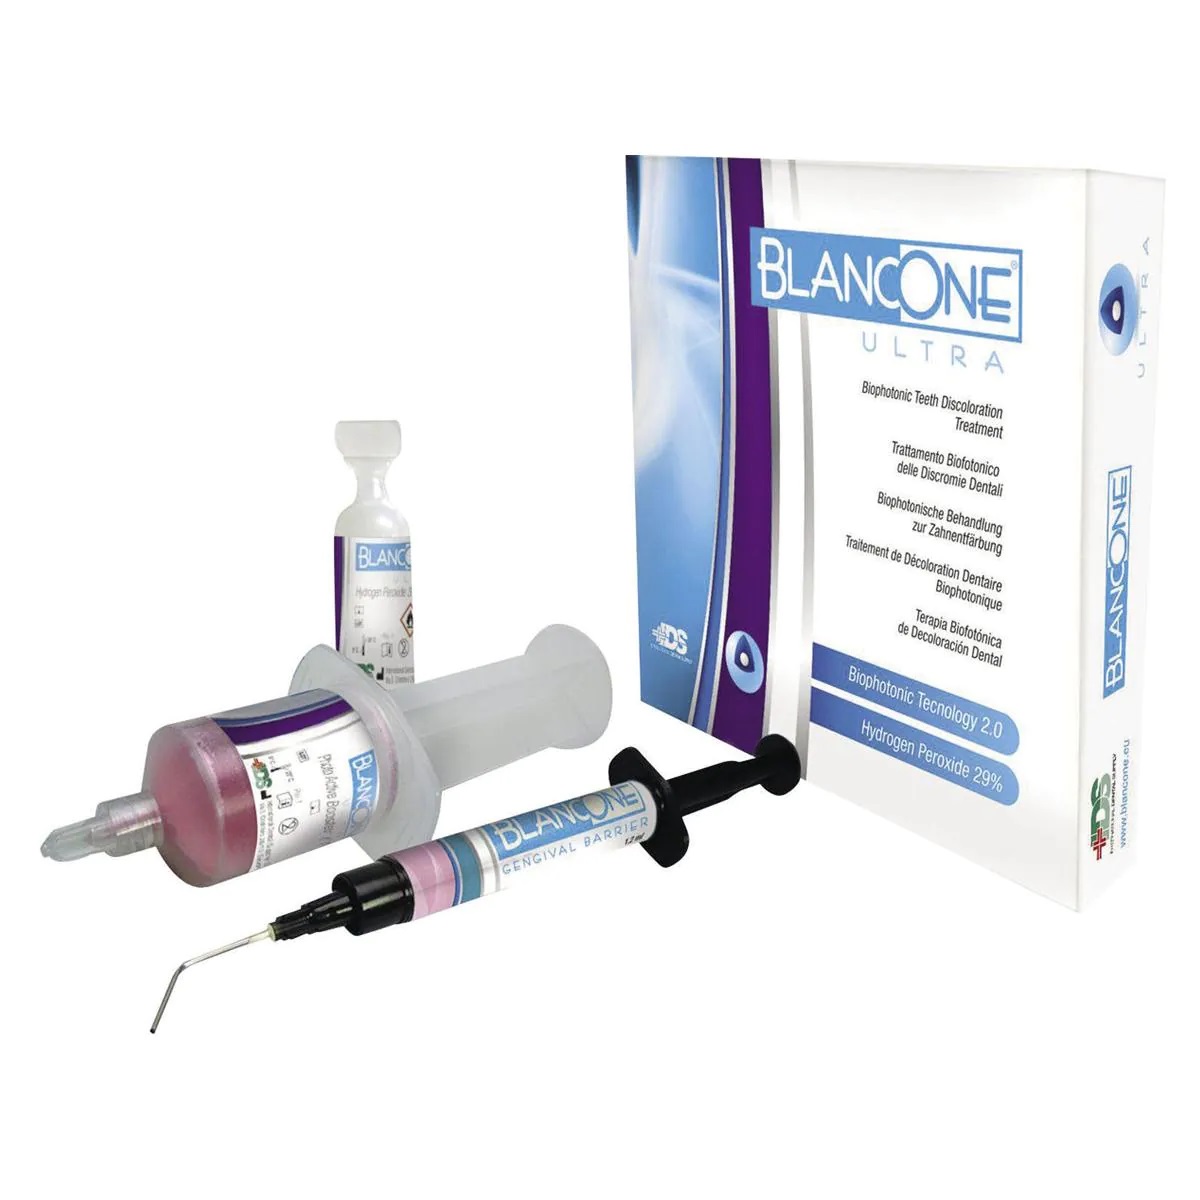 Profilassi - BLANCONE ULTRA - Kit per 1 trattamento